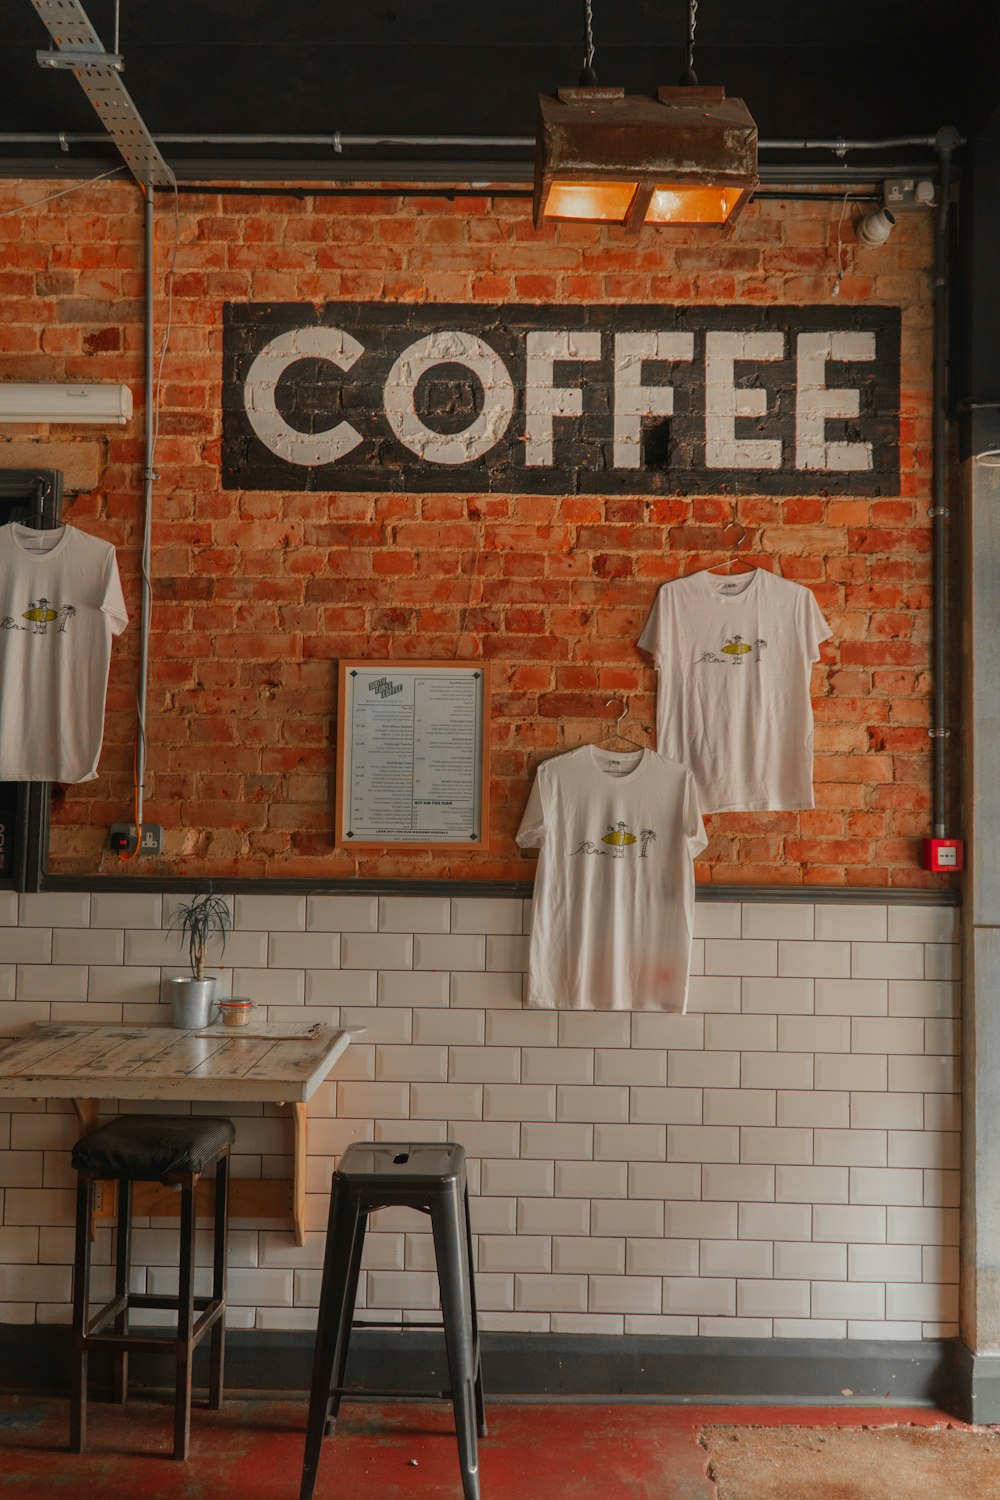 コーヒーと書かれた看板のあるレンガの壁